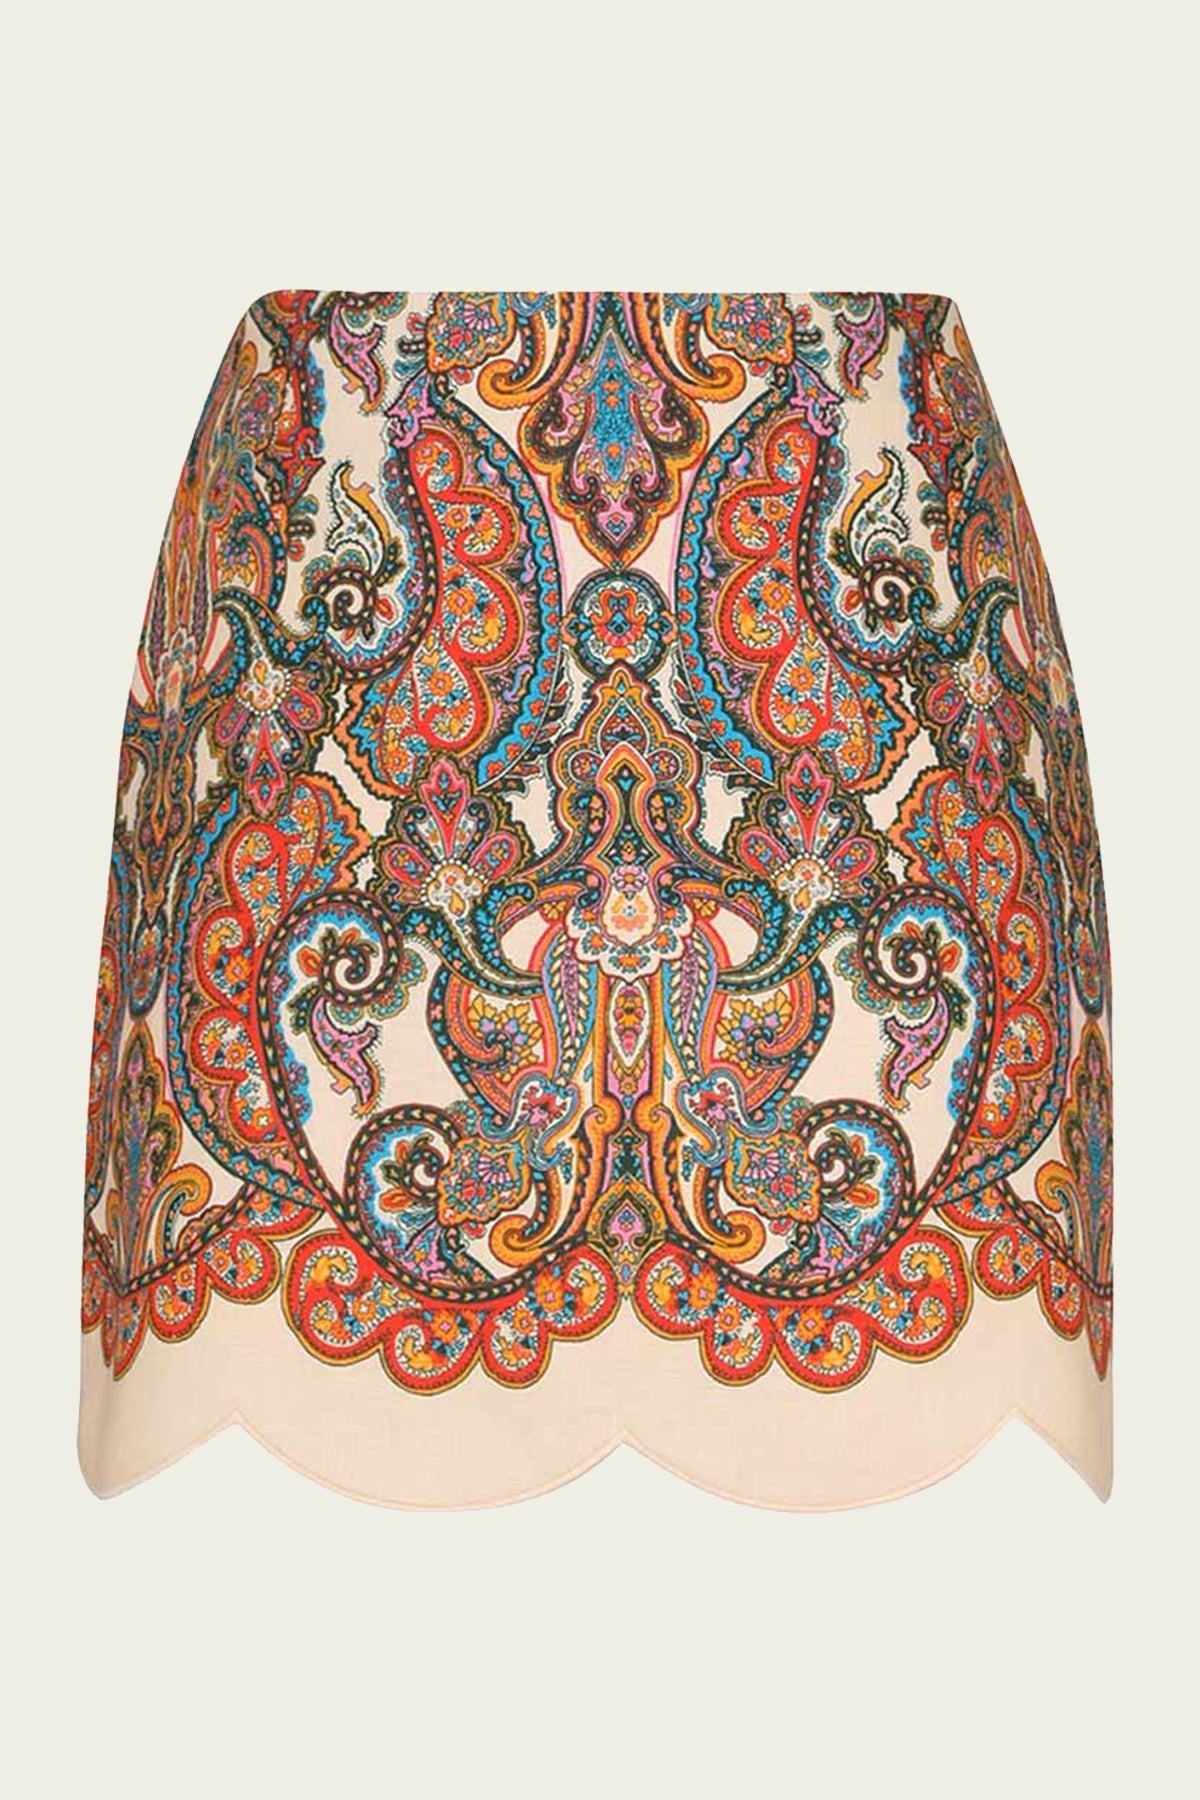 Ottie Scallop Mini Skirt in Multi Paisley - shop - olivia.com